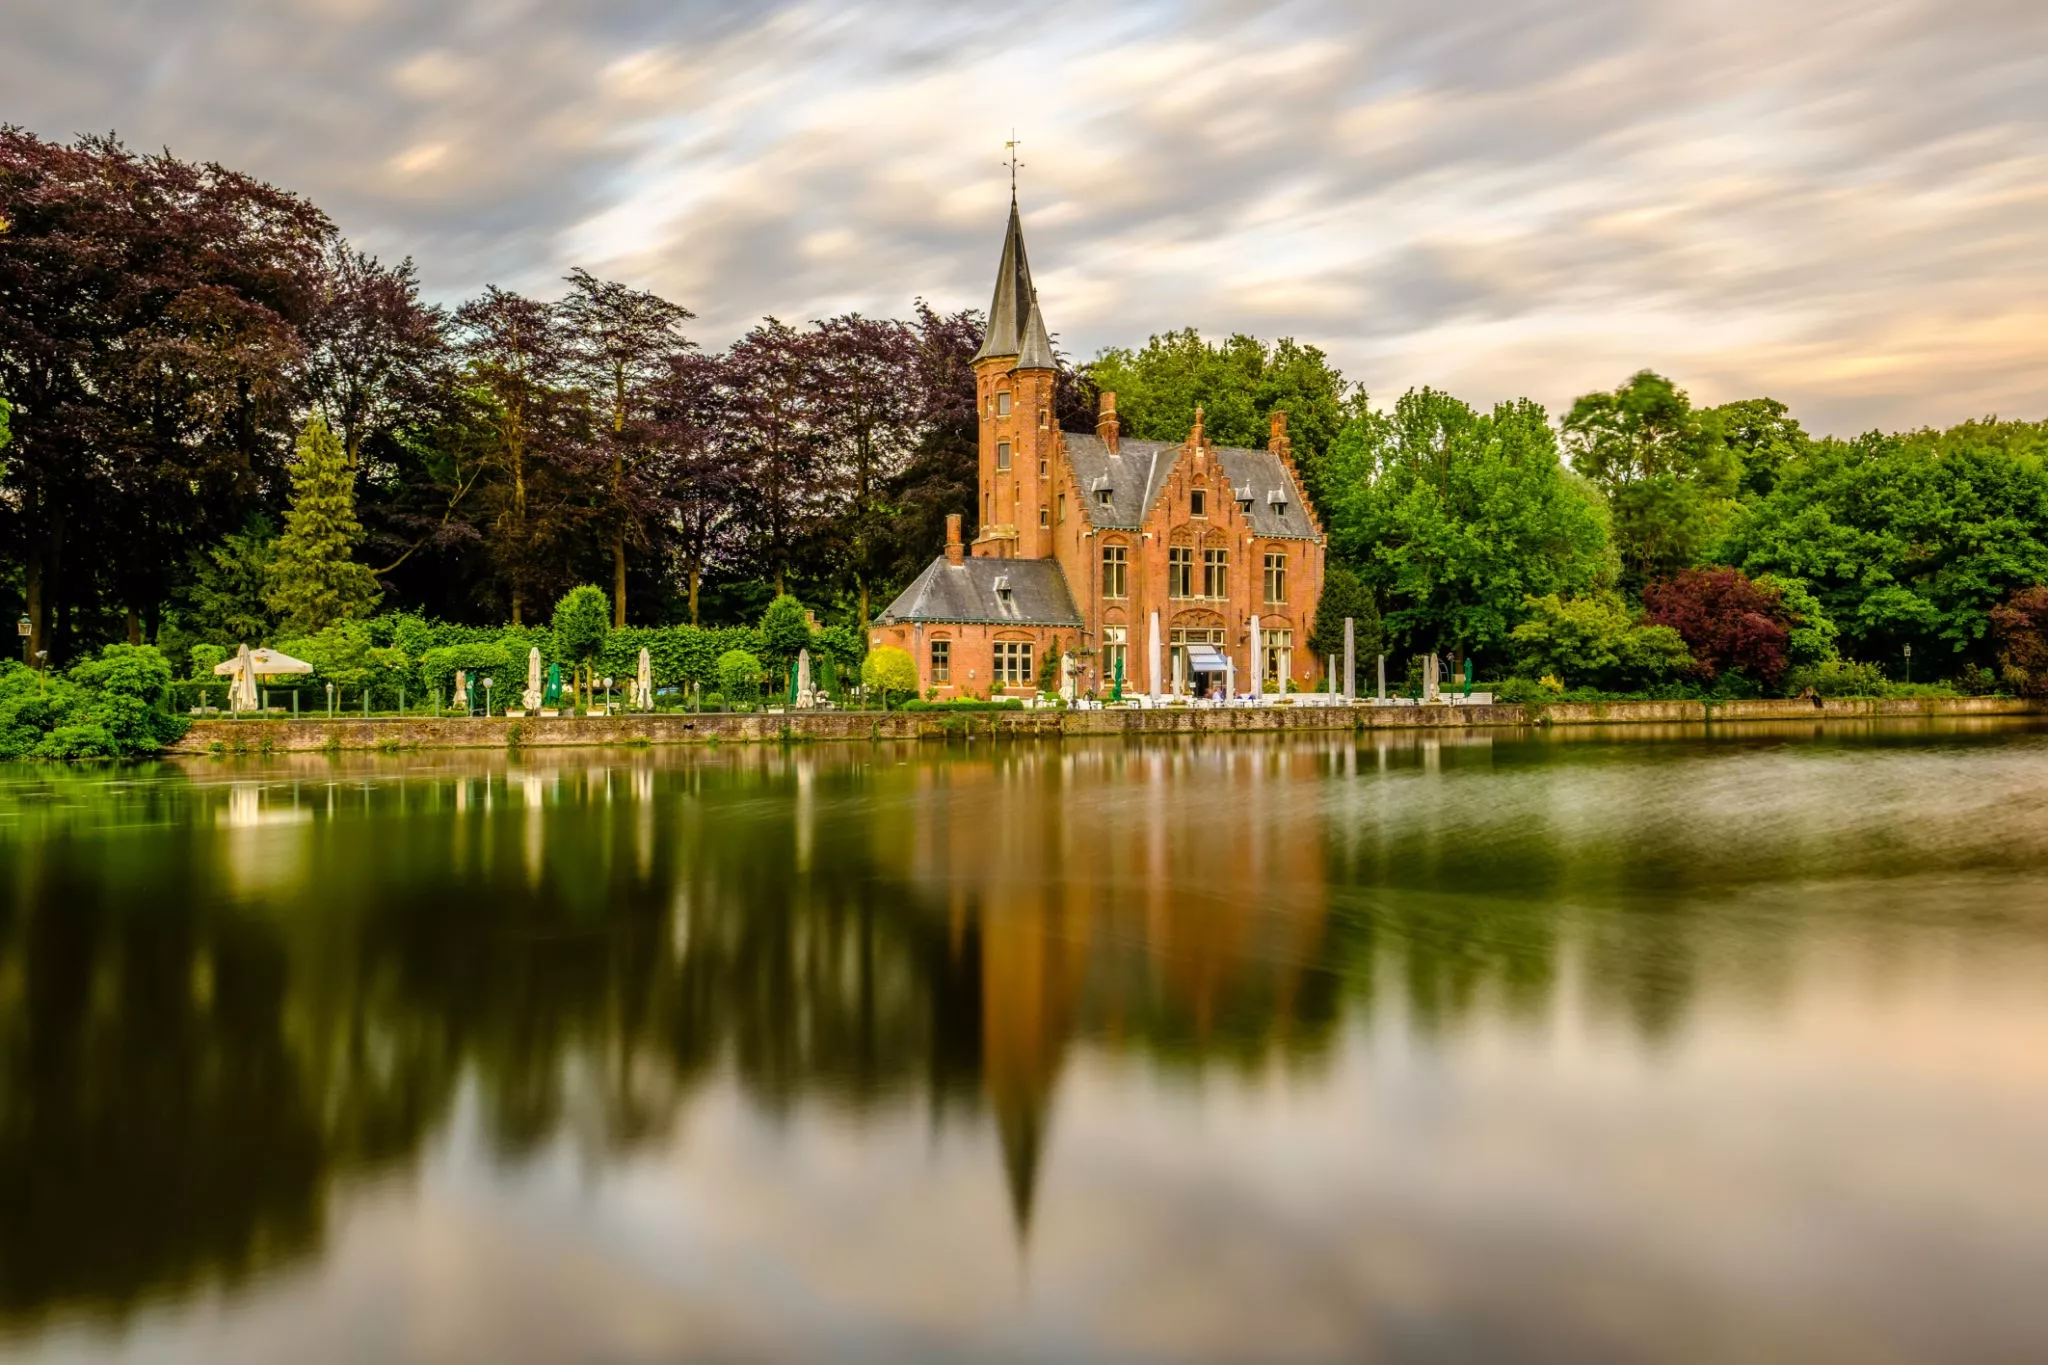 Lake of Love in Belgium, Europe | Lakes - Rated 0.9